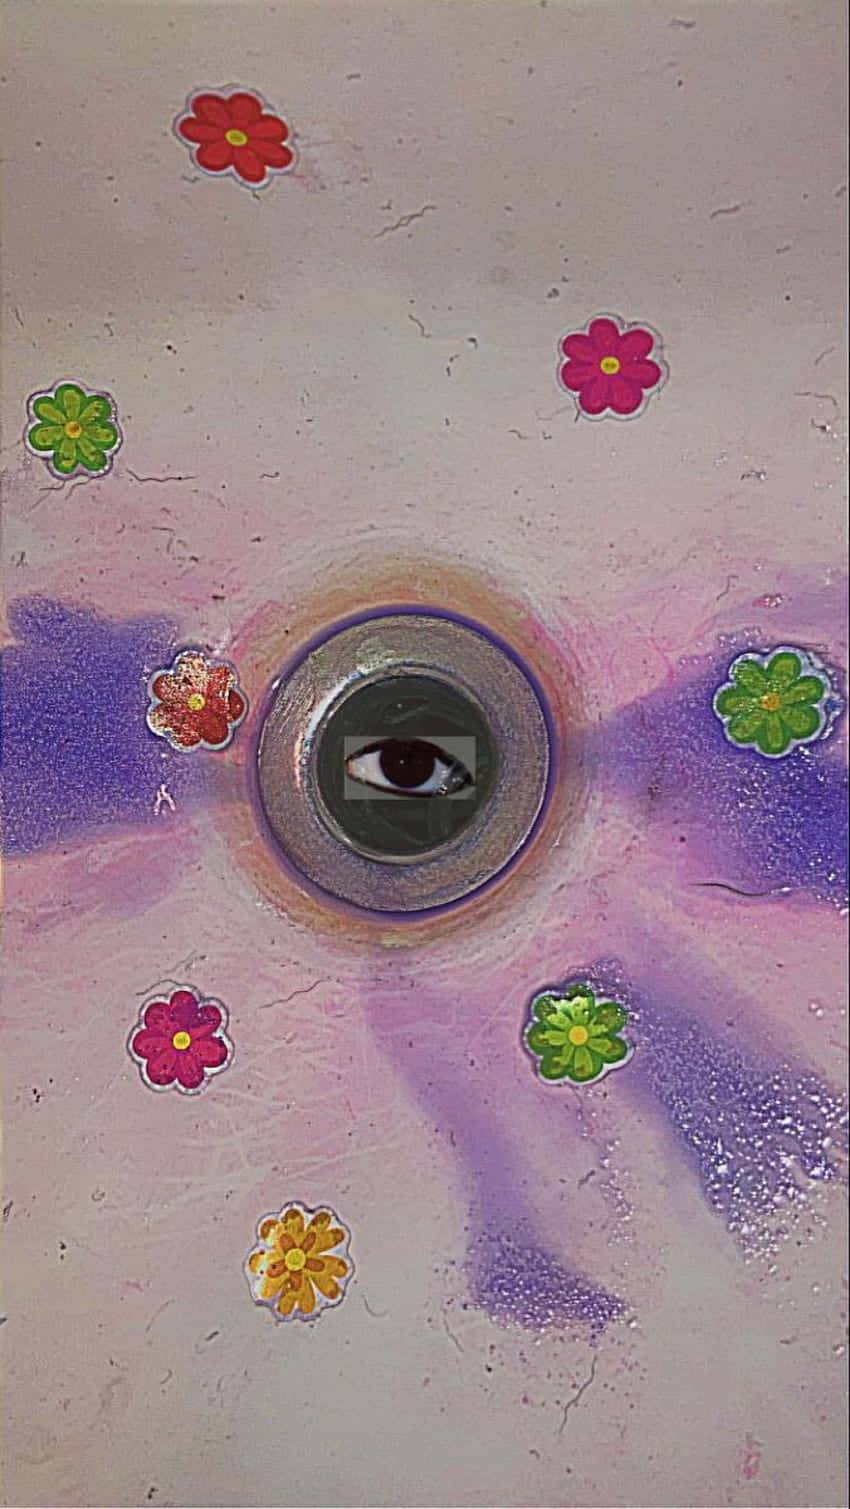 Weirdcore Eyeball Rainbow